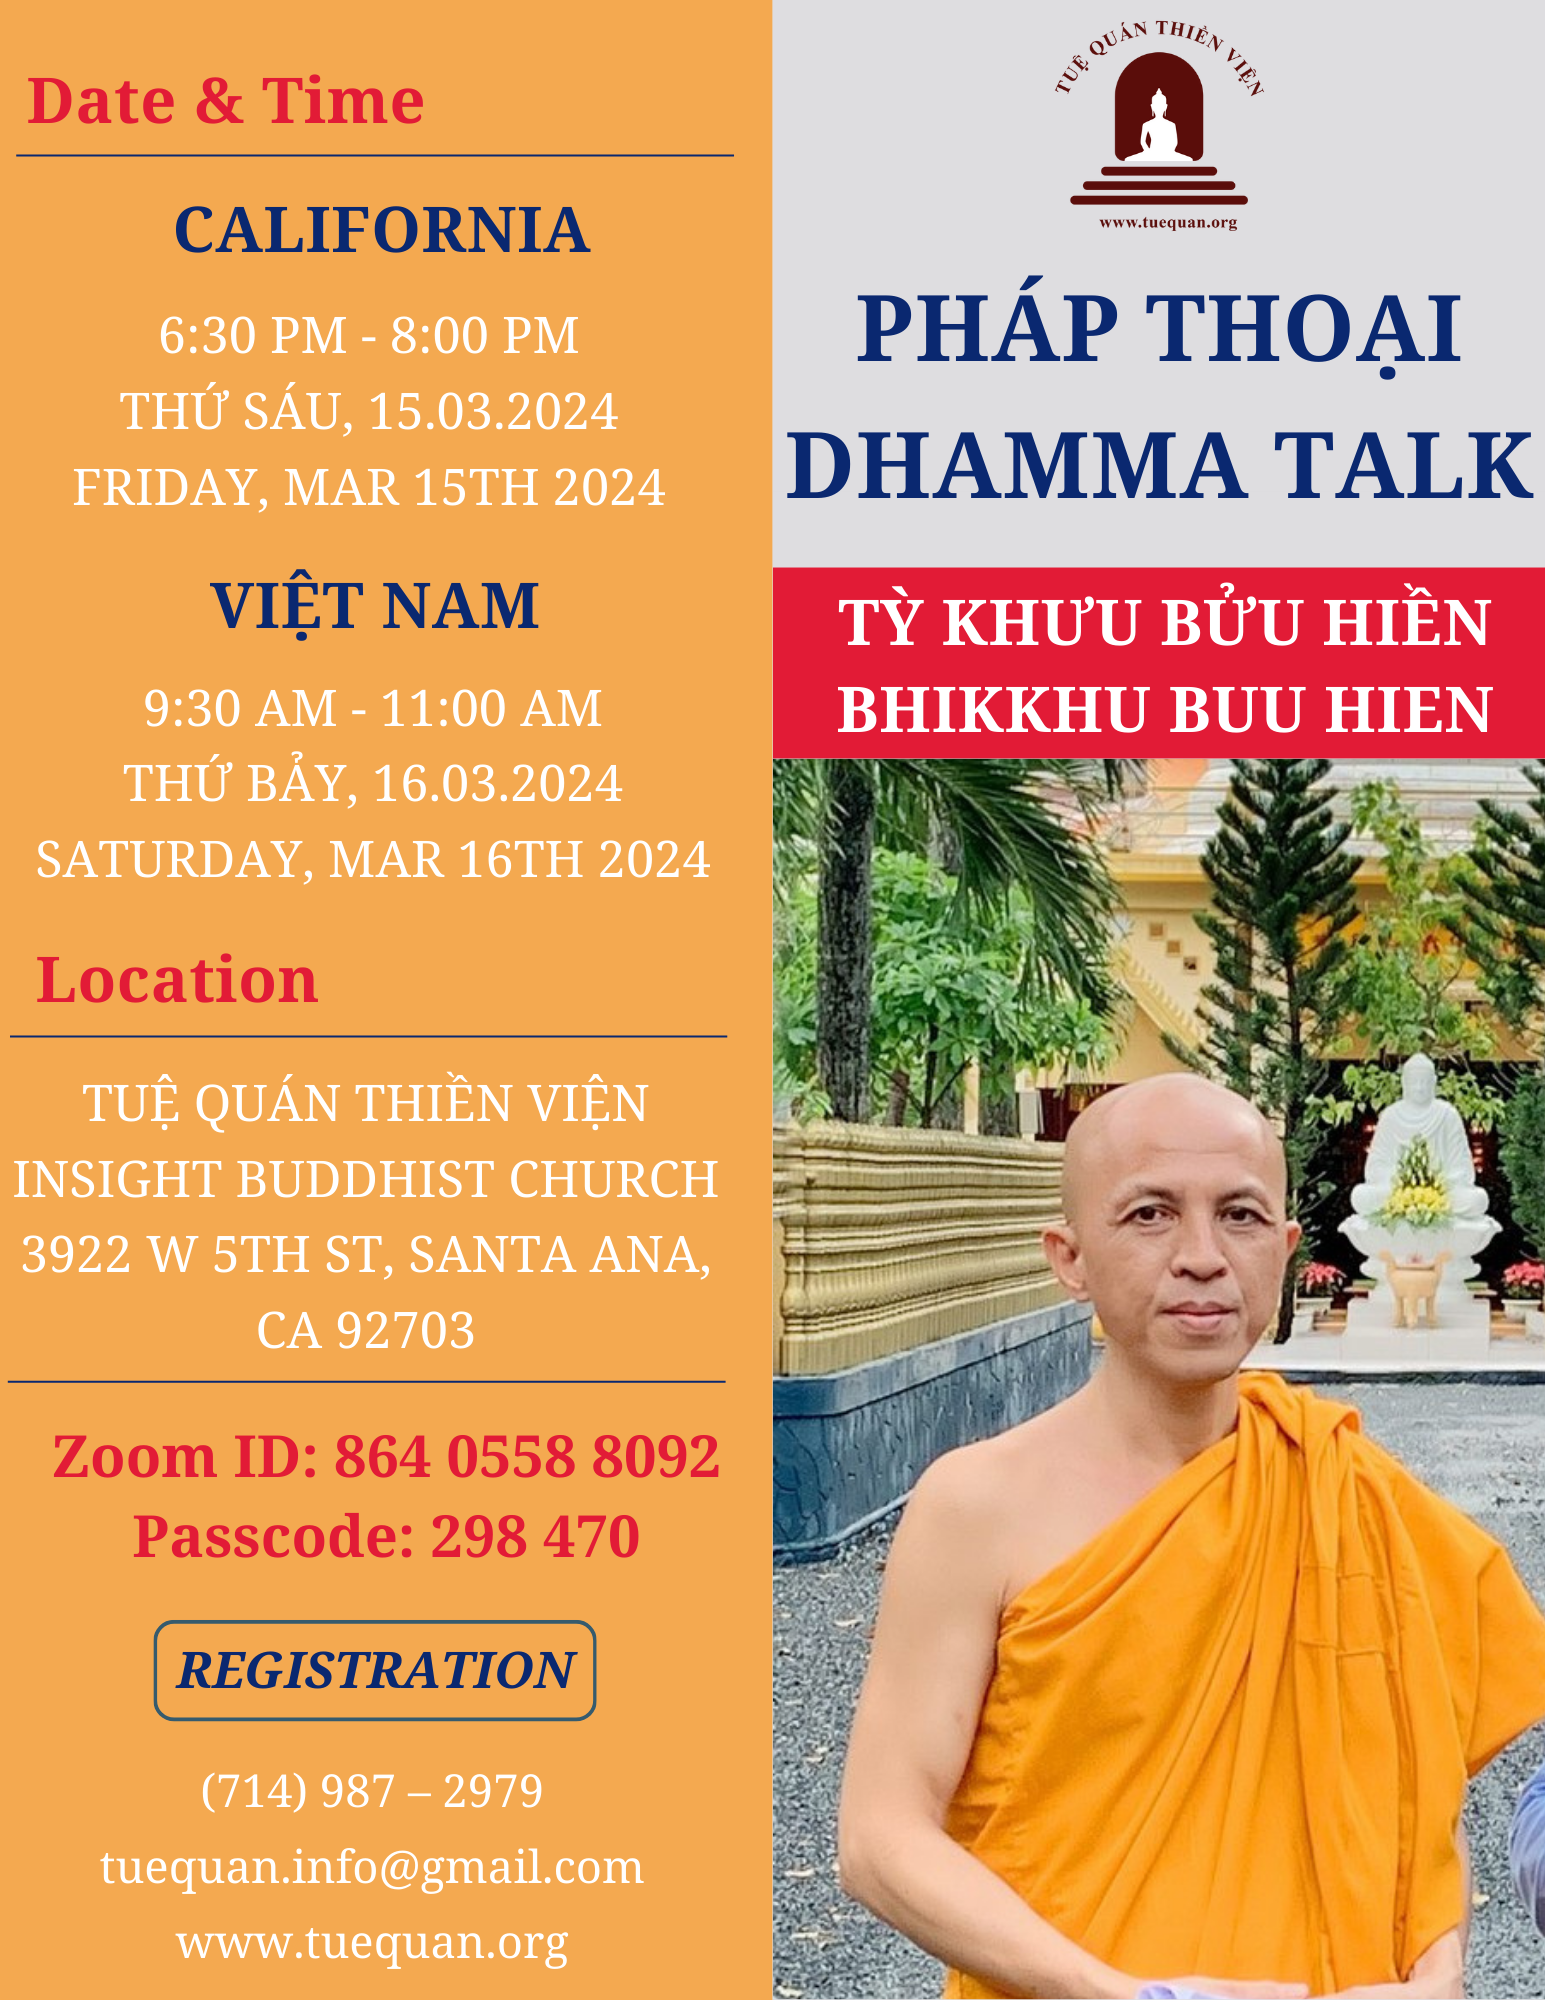 Friday Dhamma talk, Mar 15th, 2024